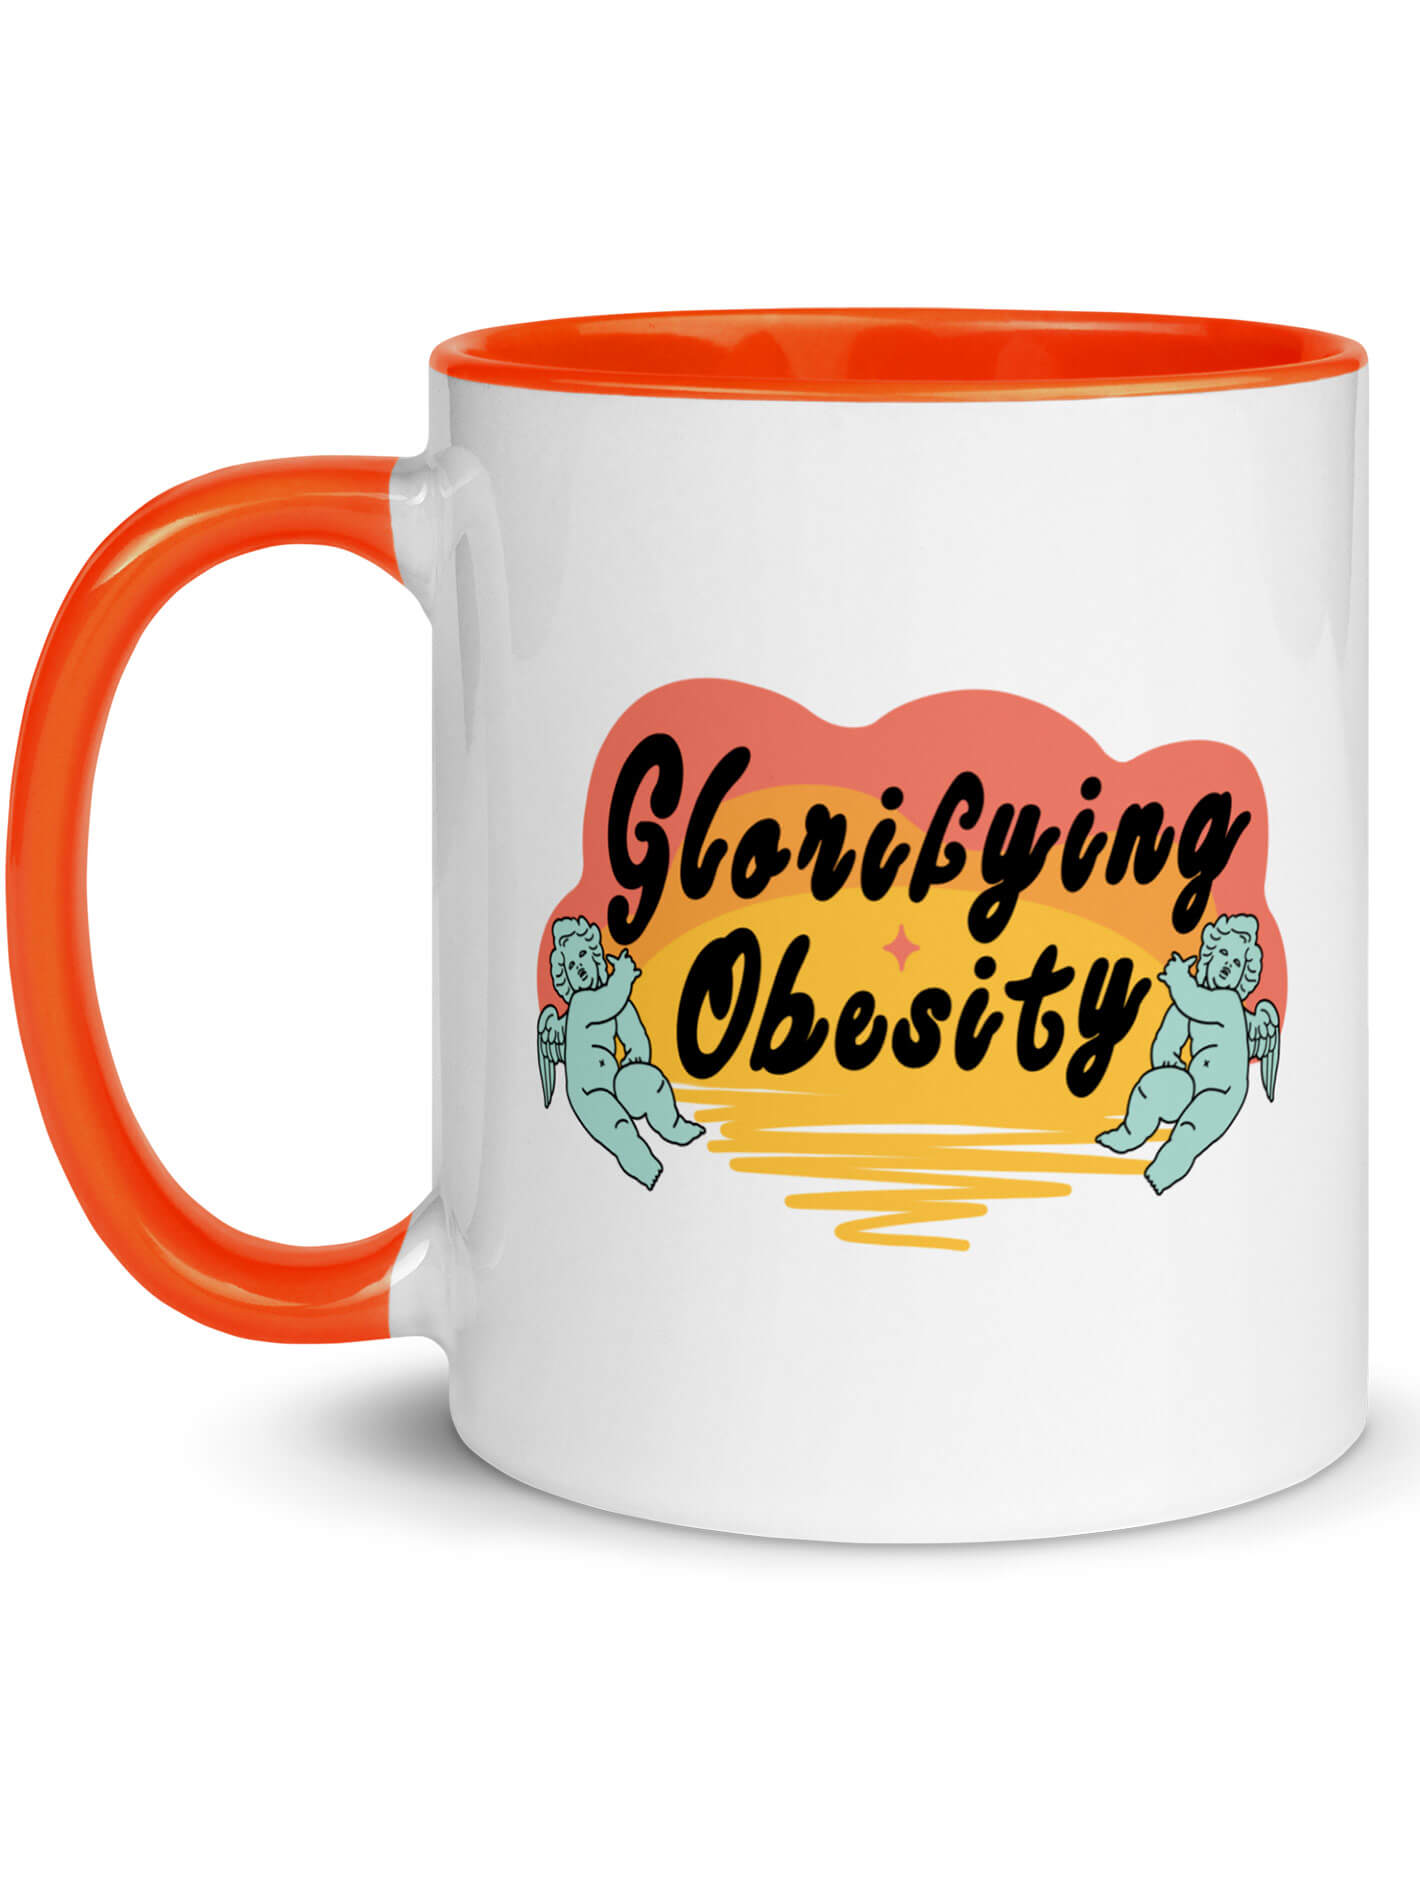 Glorifying obesity mug.